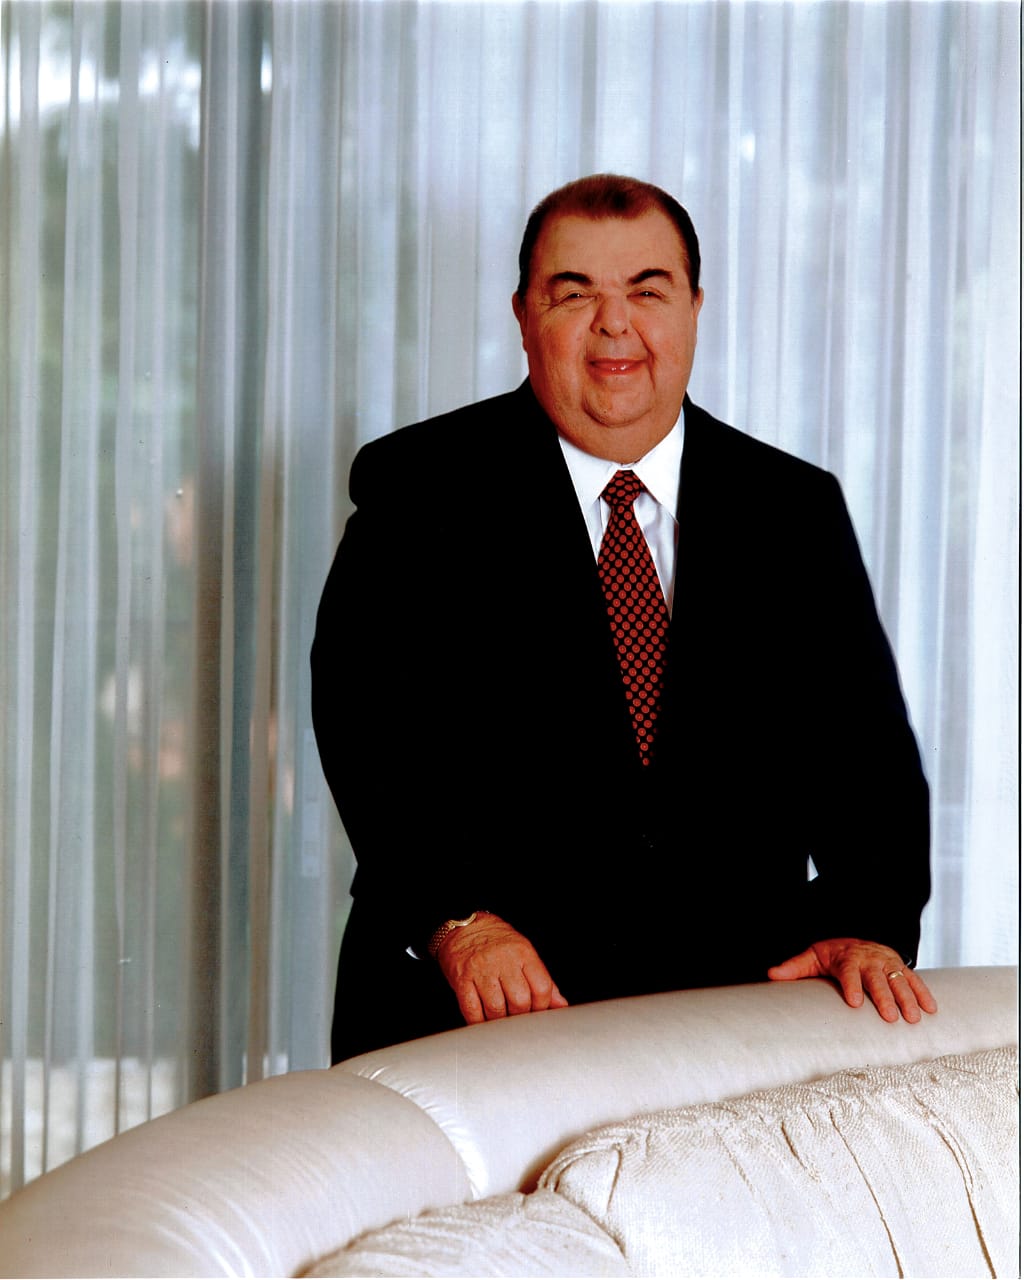 José Rafael Ferrari